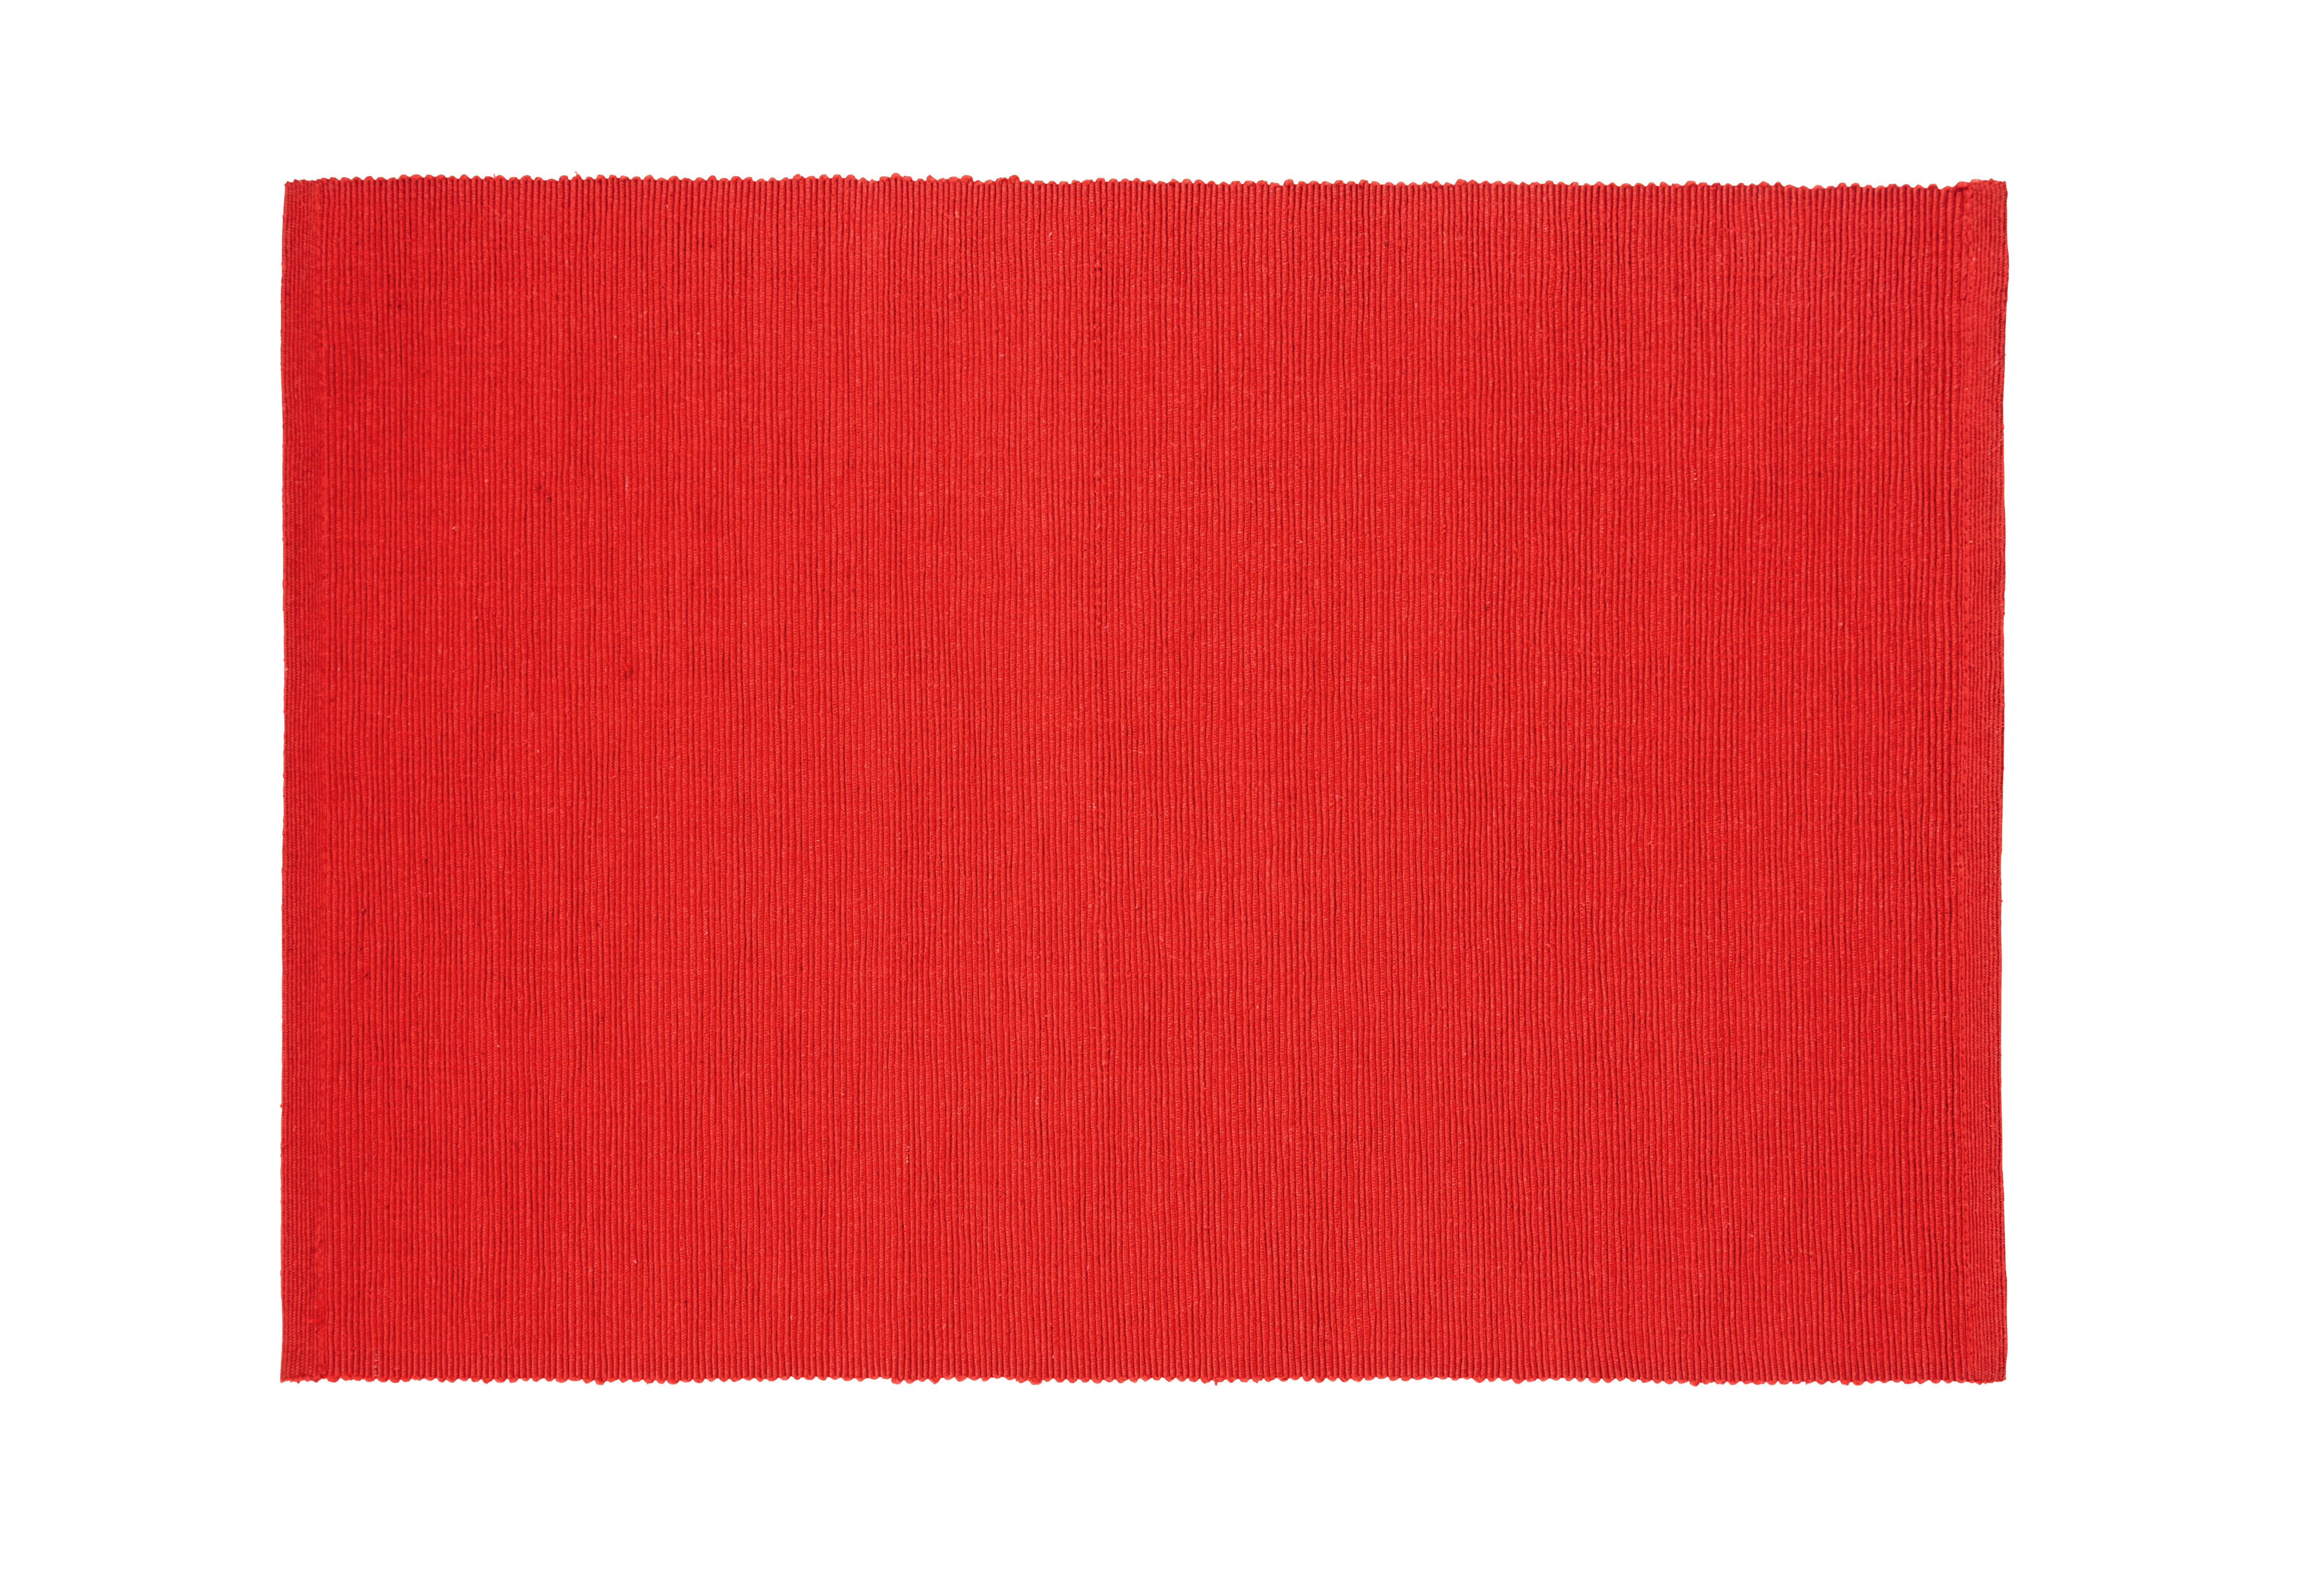 Prostírání Maren, 33/45cm - červená, textil (33/45cm) - Based